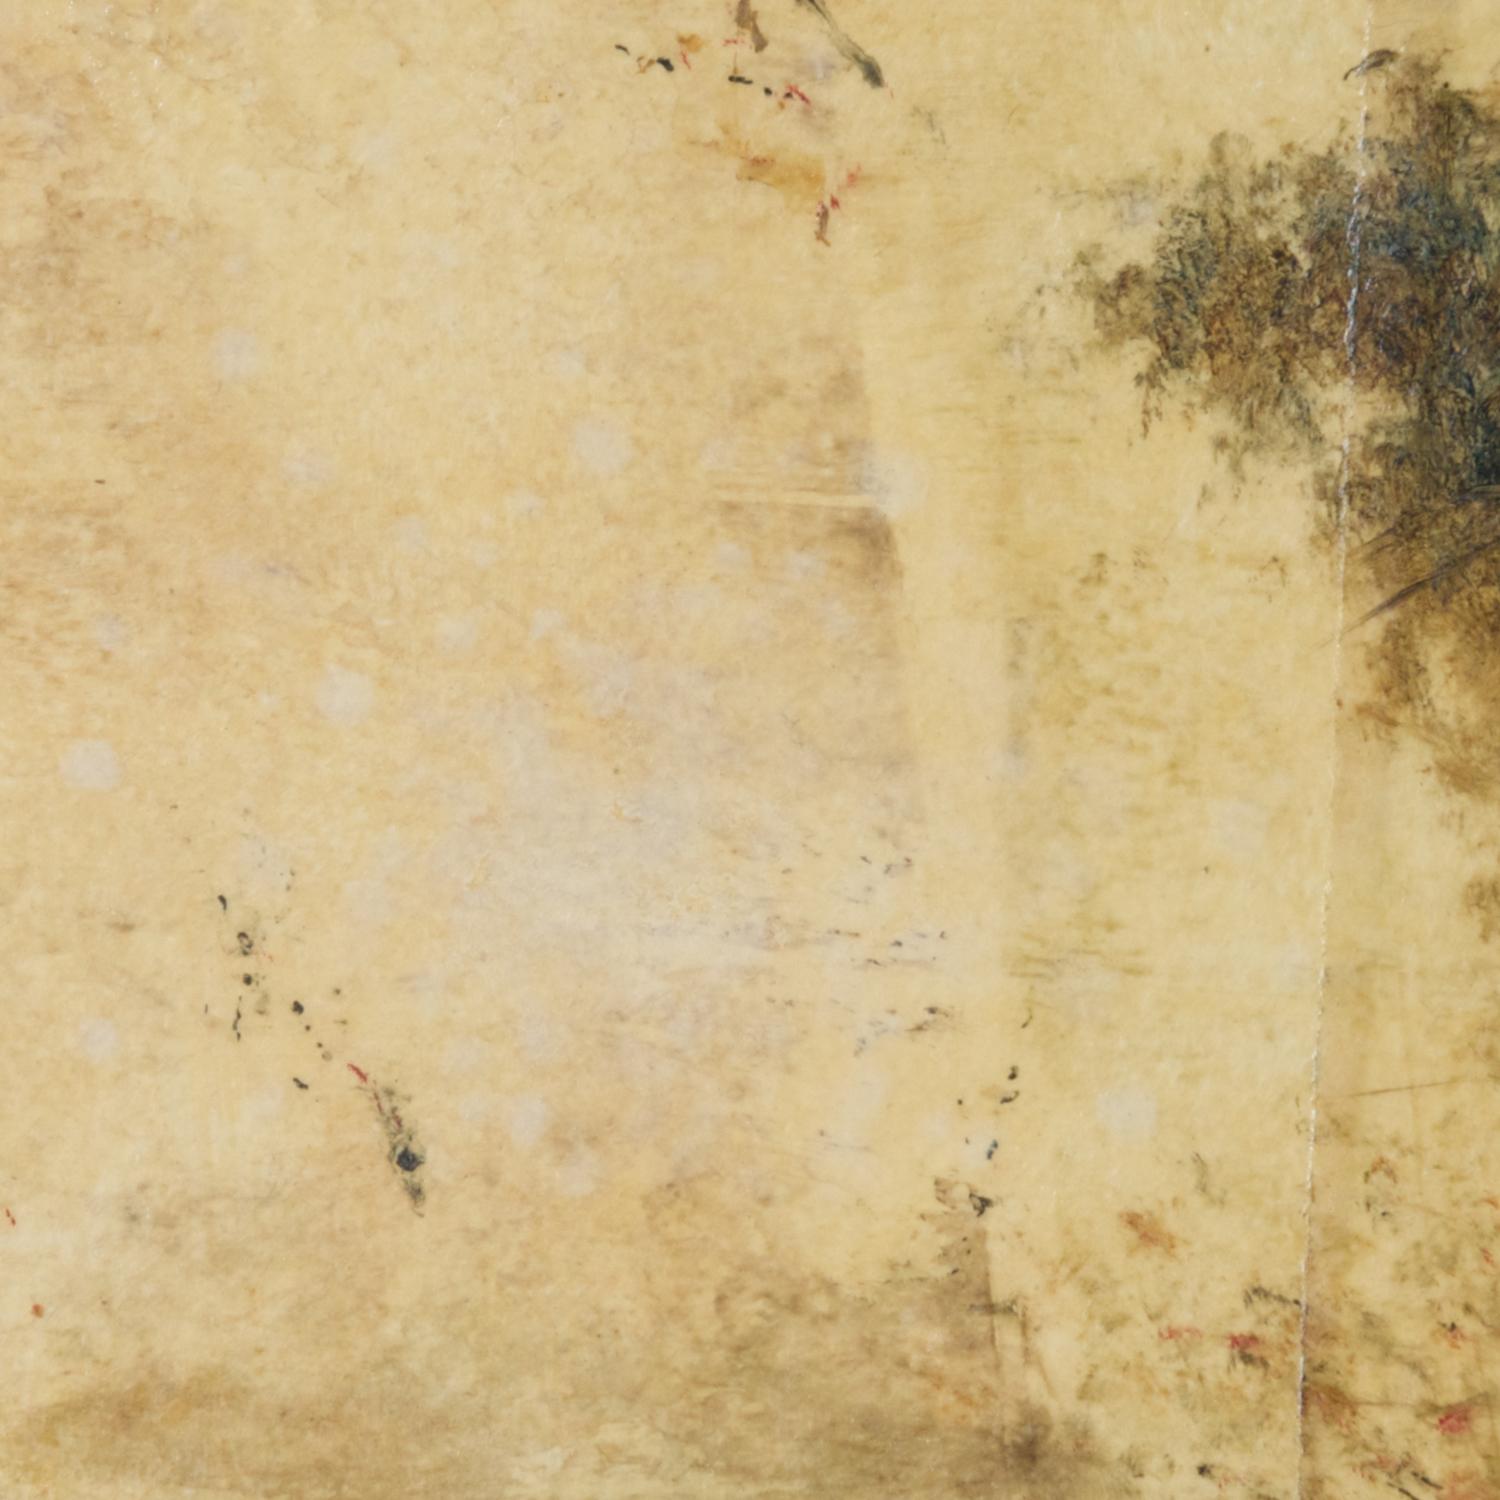 mischtechnik auf Papier; ungerahmt

Der neoromantische Maler Hiro Yokose verschmilzt mehrere Schichten aus Wachs und Ölfarbe zu geheimnisvollen, verschleierten Landschaften, die von Lichtblitzen am Himmel und Spiegelungen auf dem Wasser beleuchtet